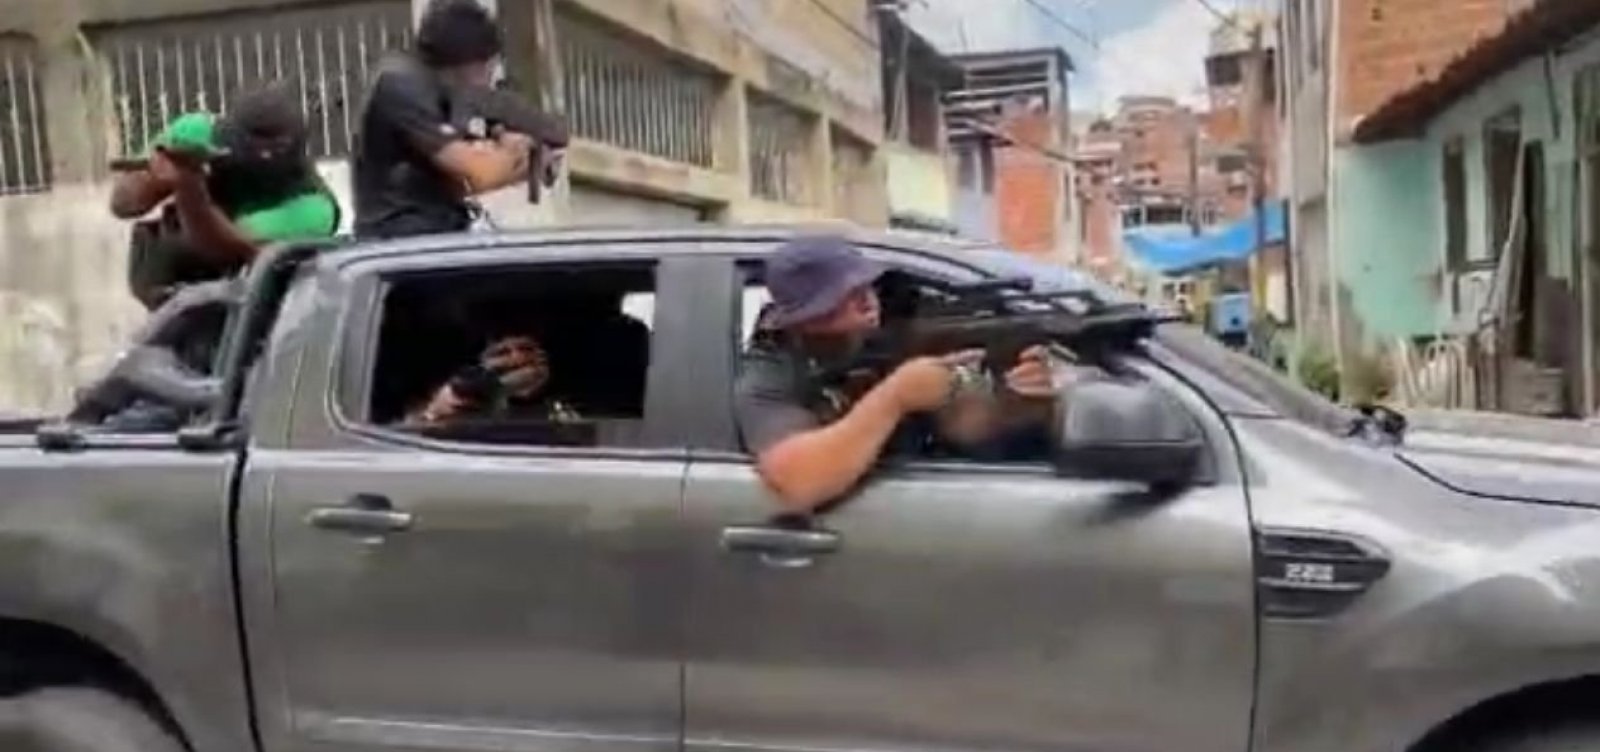 Autores de vídeo que relaciona candomblé com violência podem responder por terrorismo, diz advogado